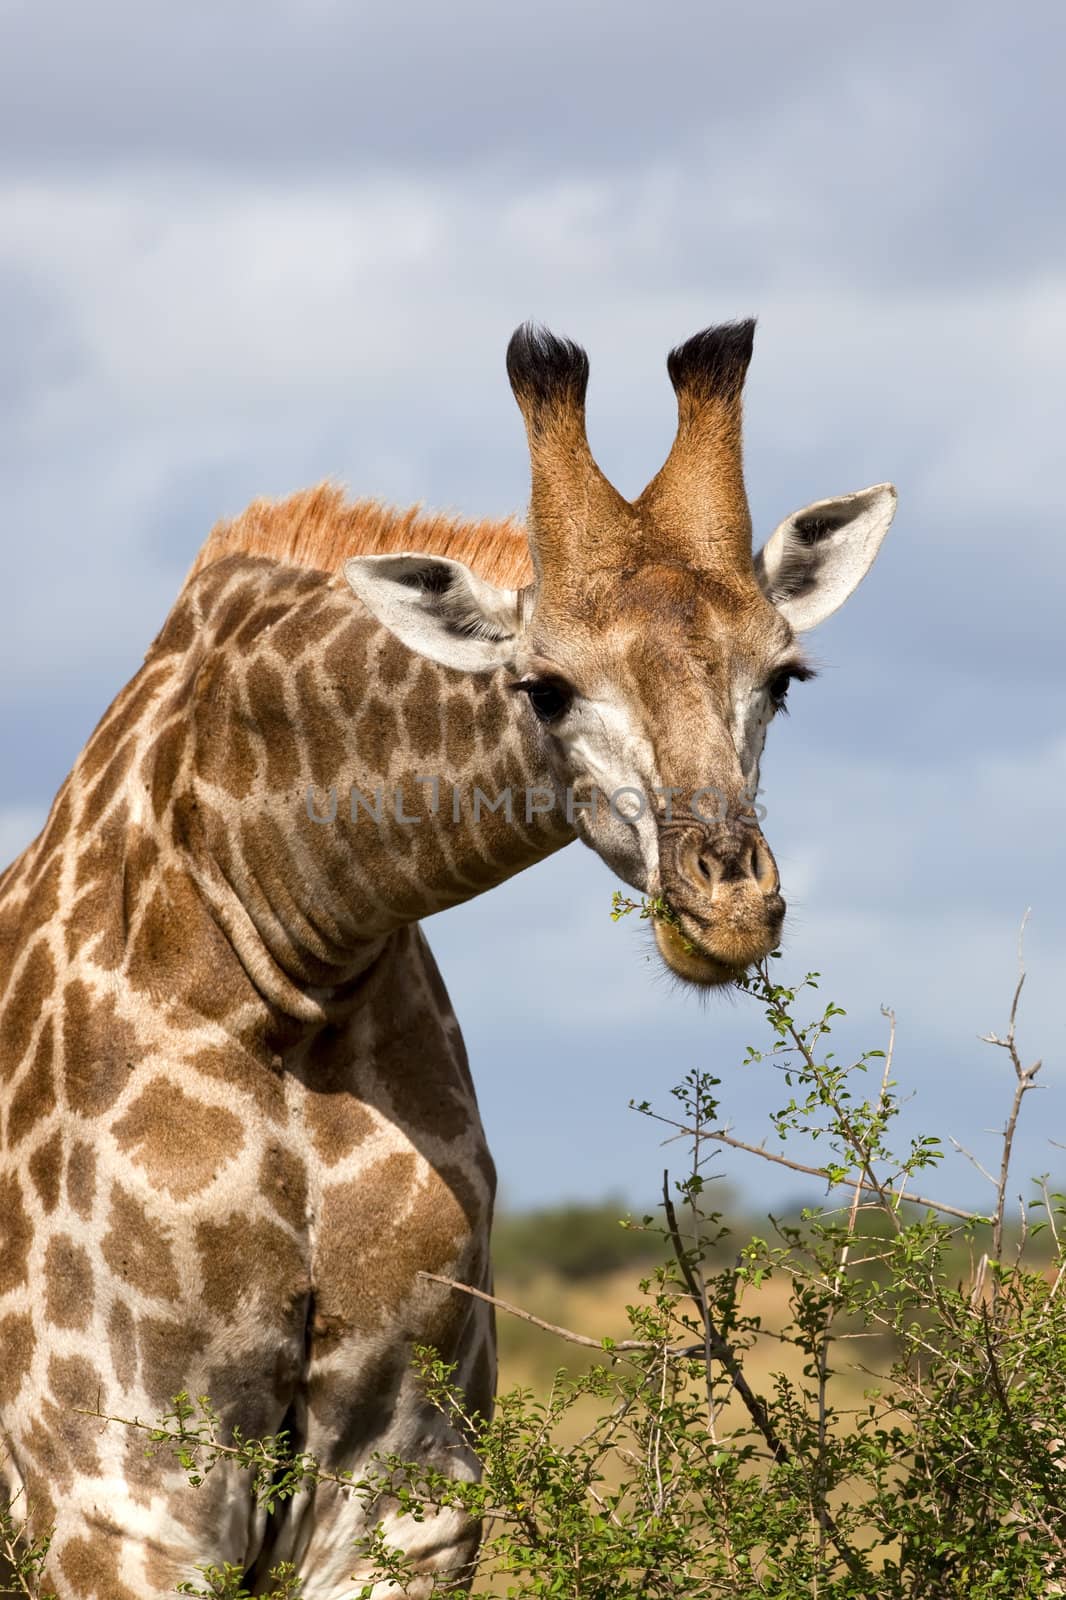 Giraffe Feeding by nightowlza